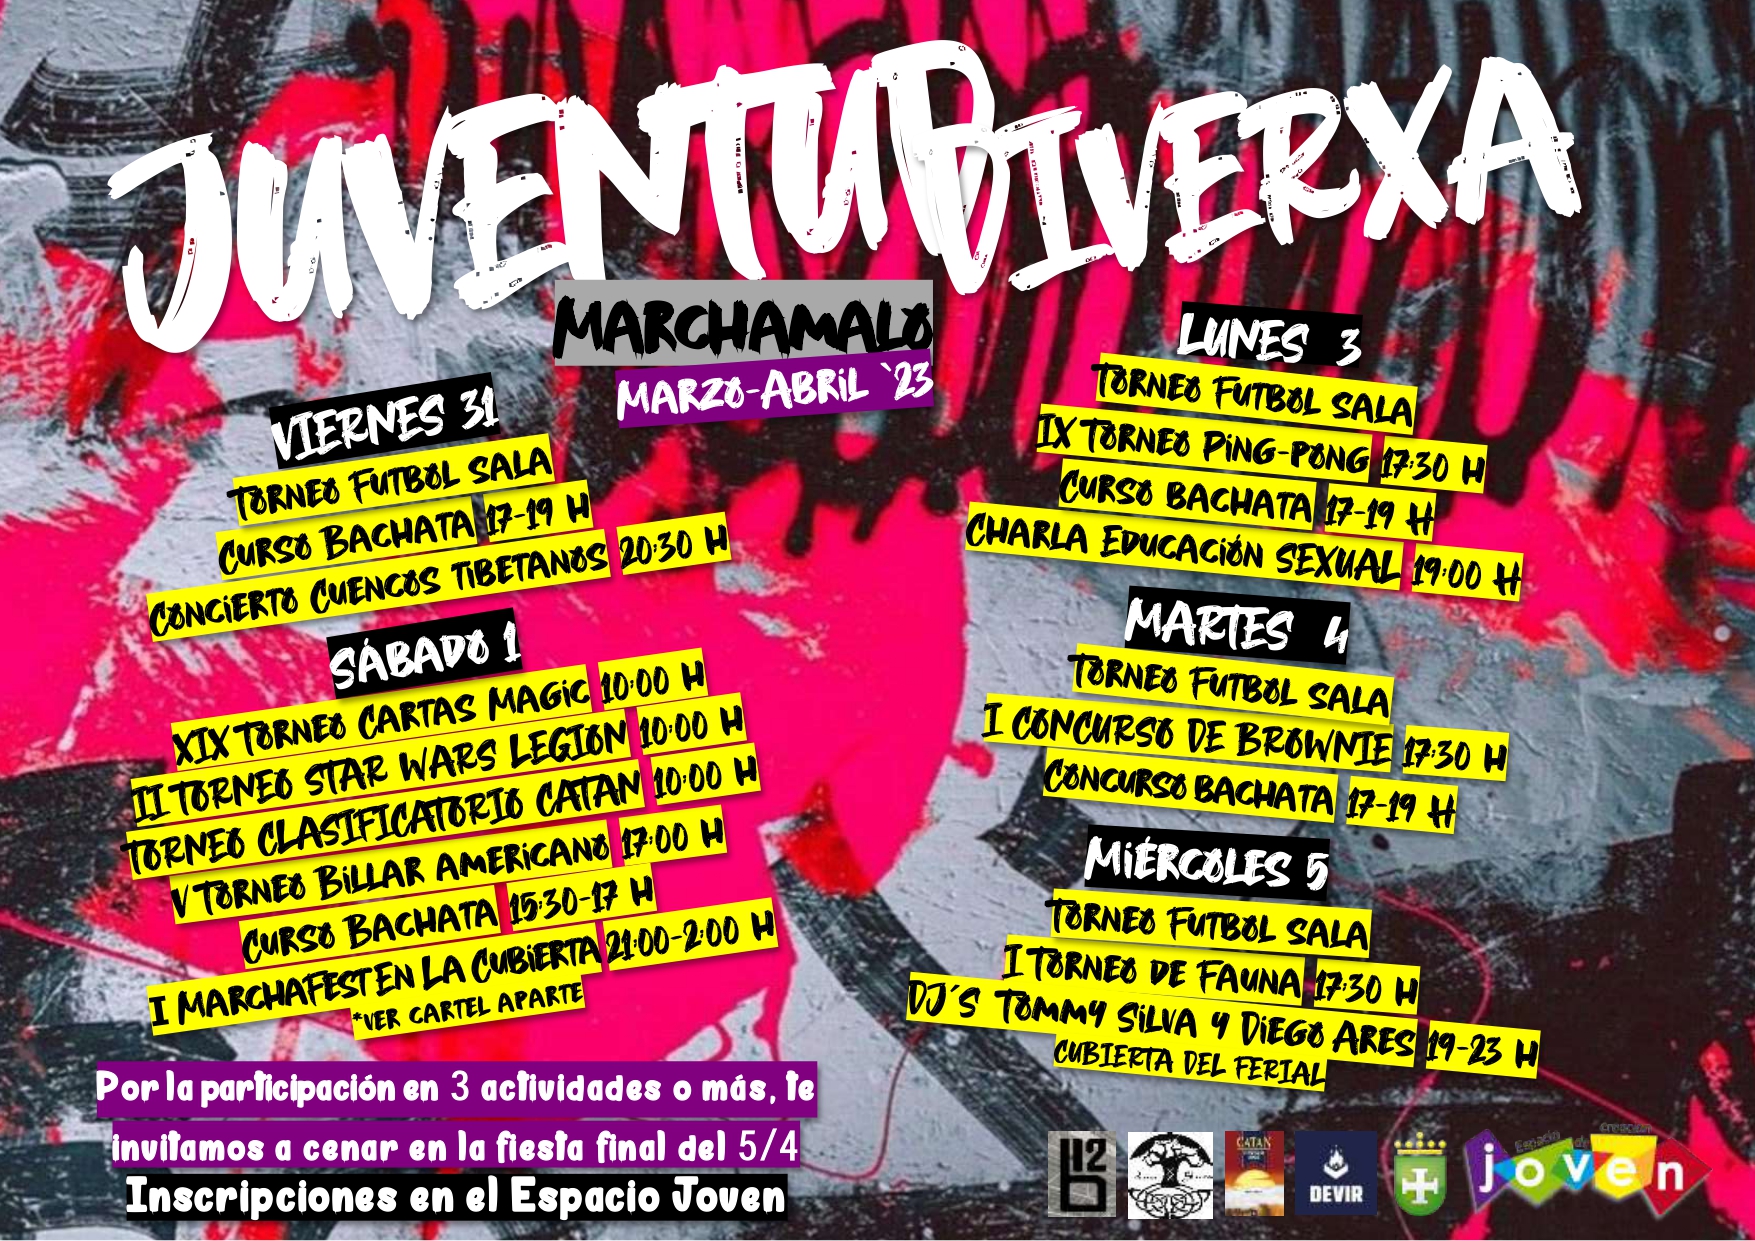 ¡Juventud Diverxa! Una semana de actividades gratuitas para jóvenes en Marchamalo